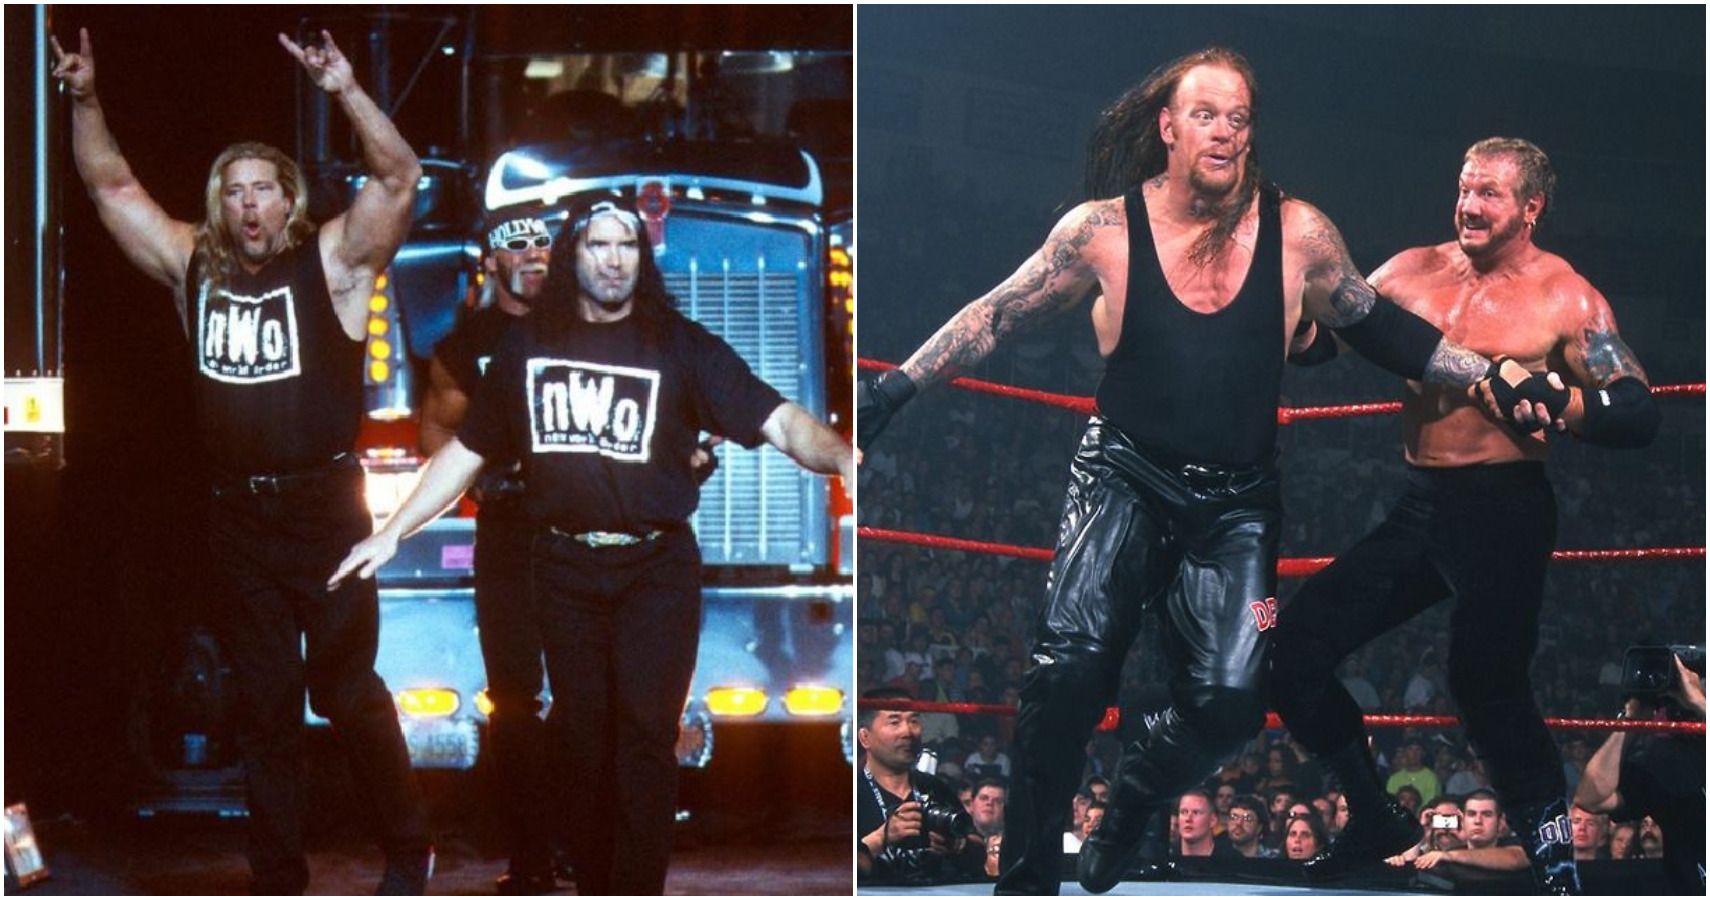 NWO, Diamond Dallas Page vs The Undertaker